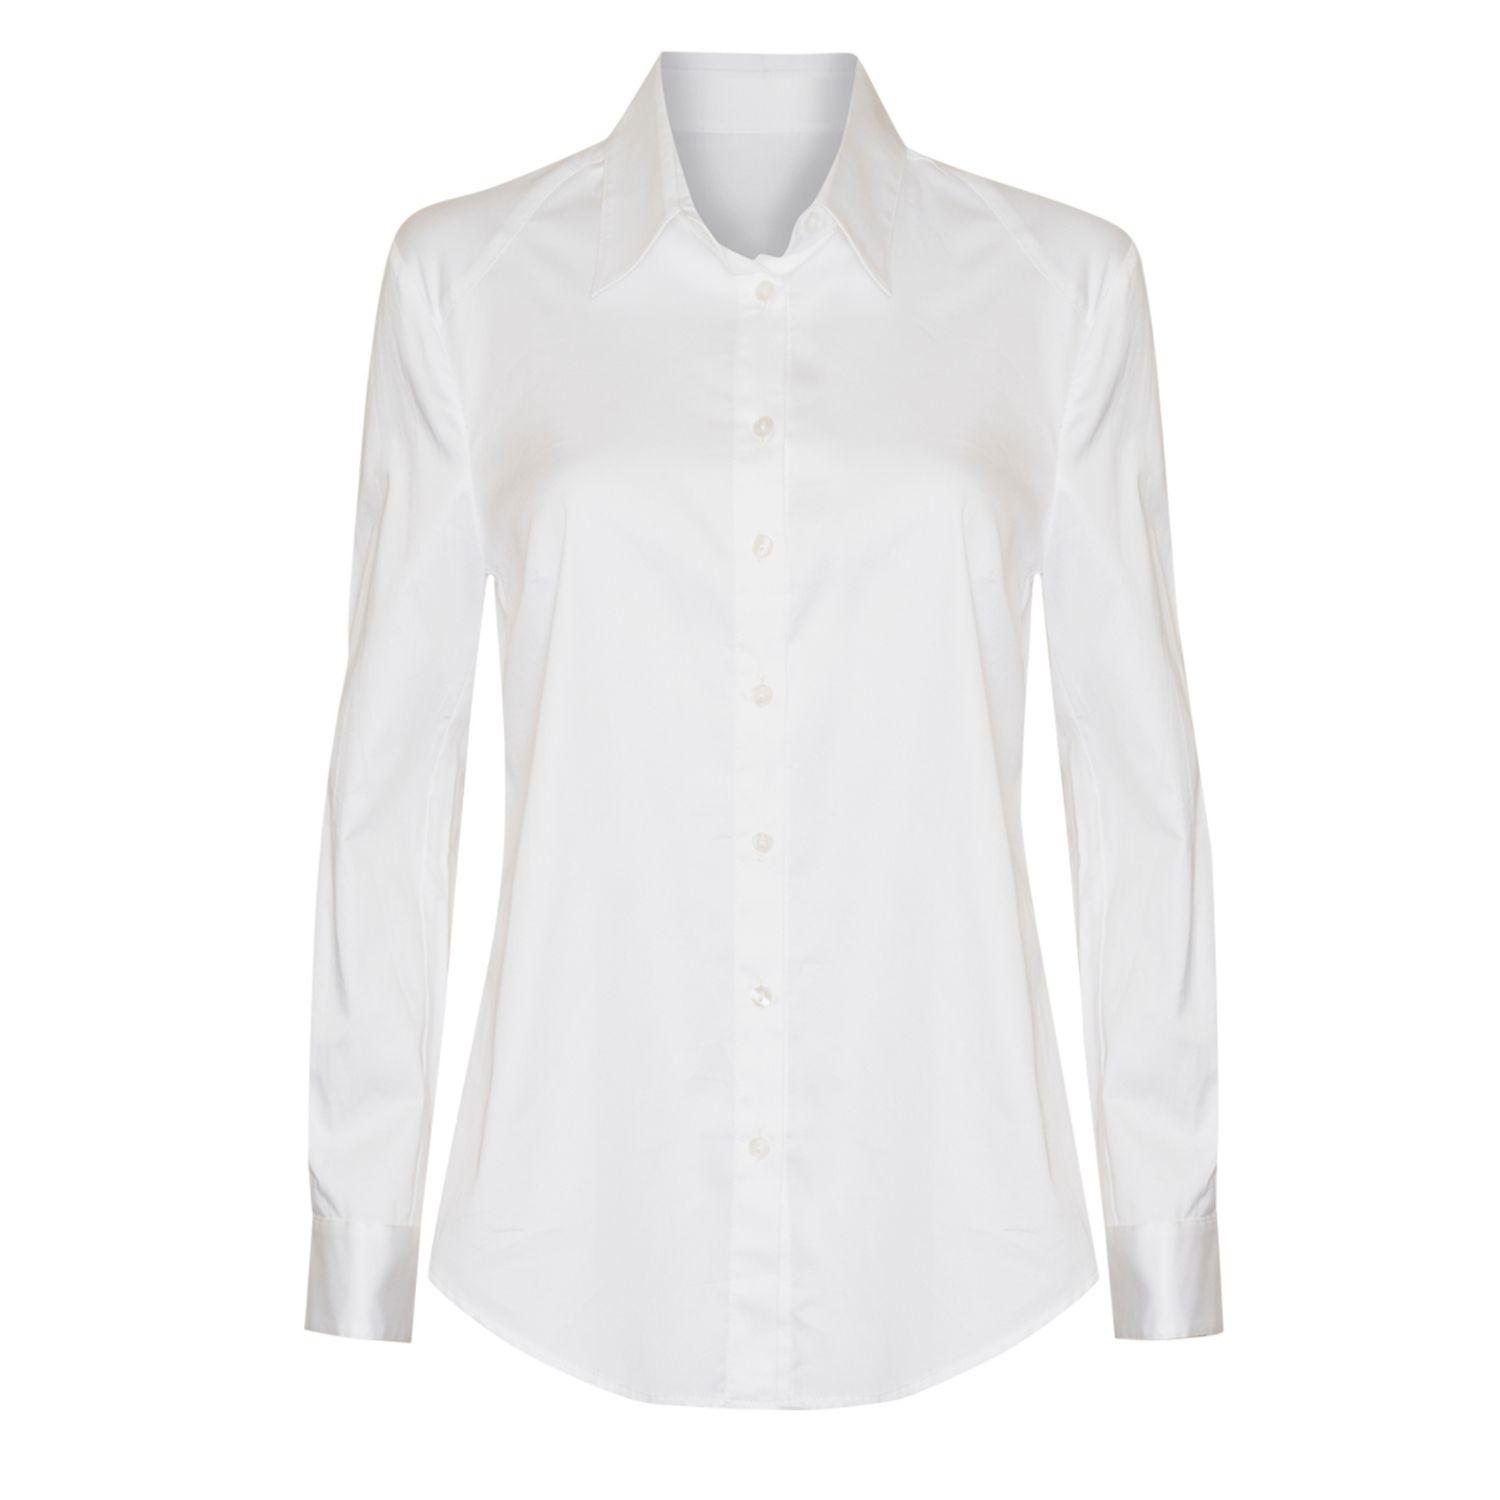 Women’s Classic Shirt In White Medium Sacha Drake